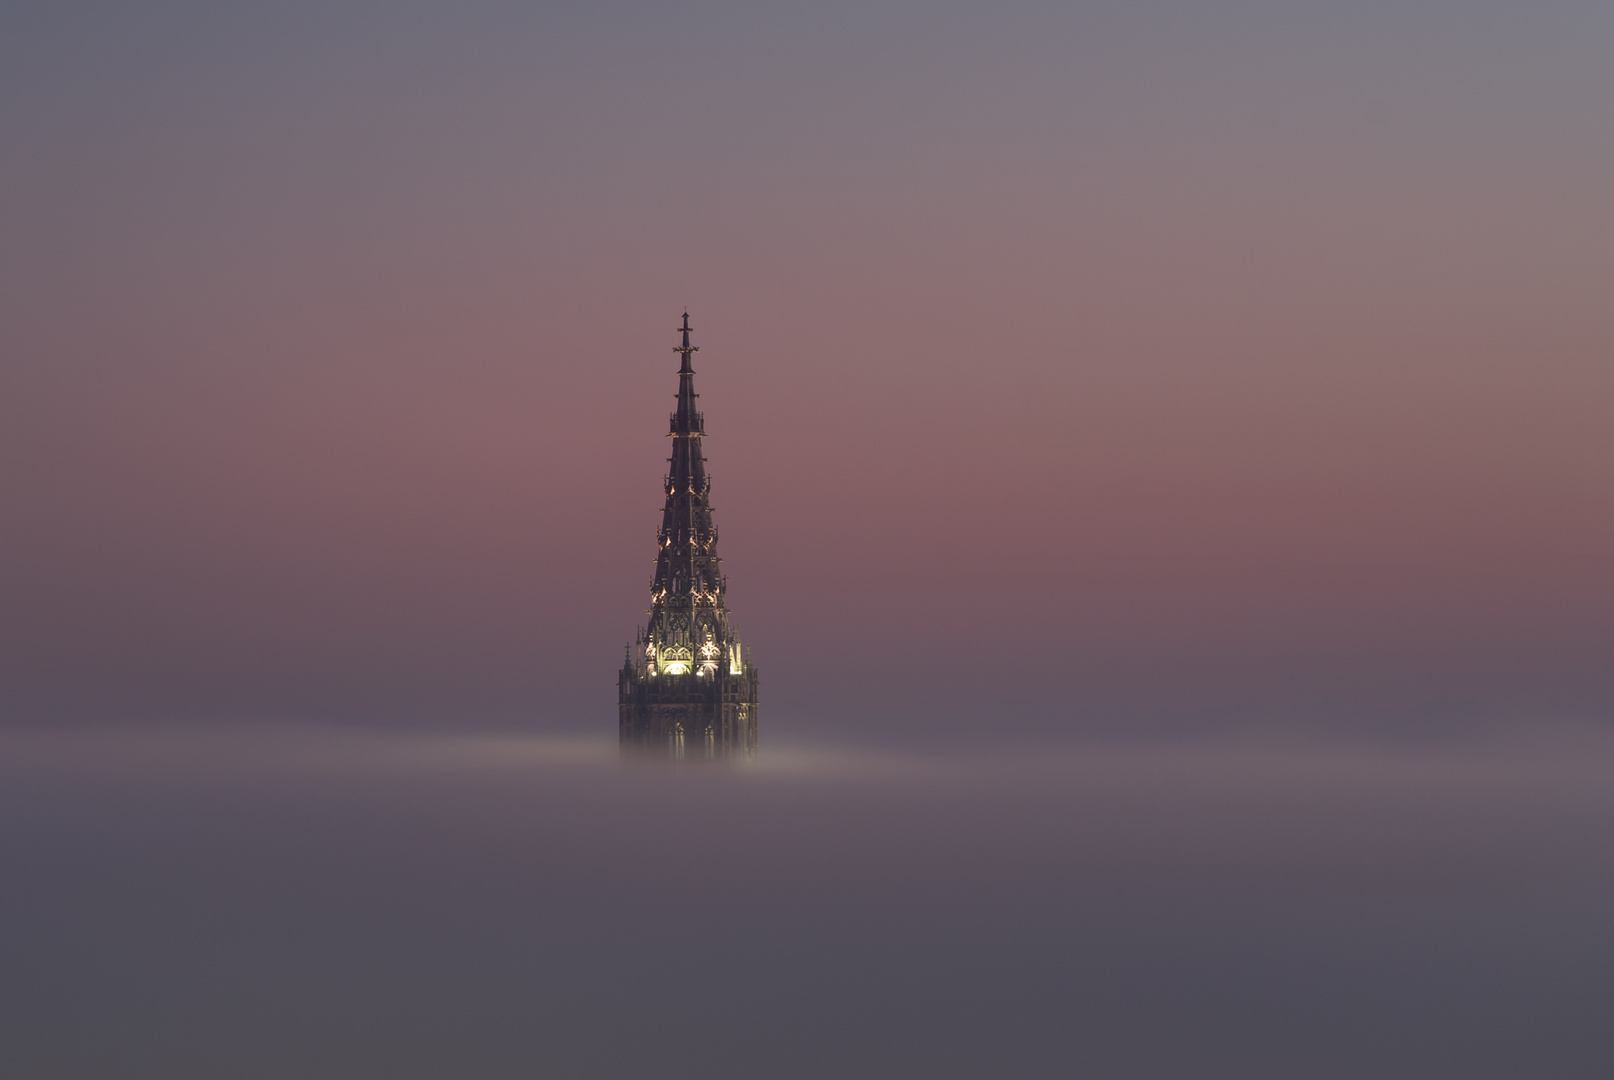 - Ulm und der Nebel -